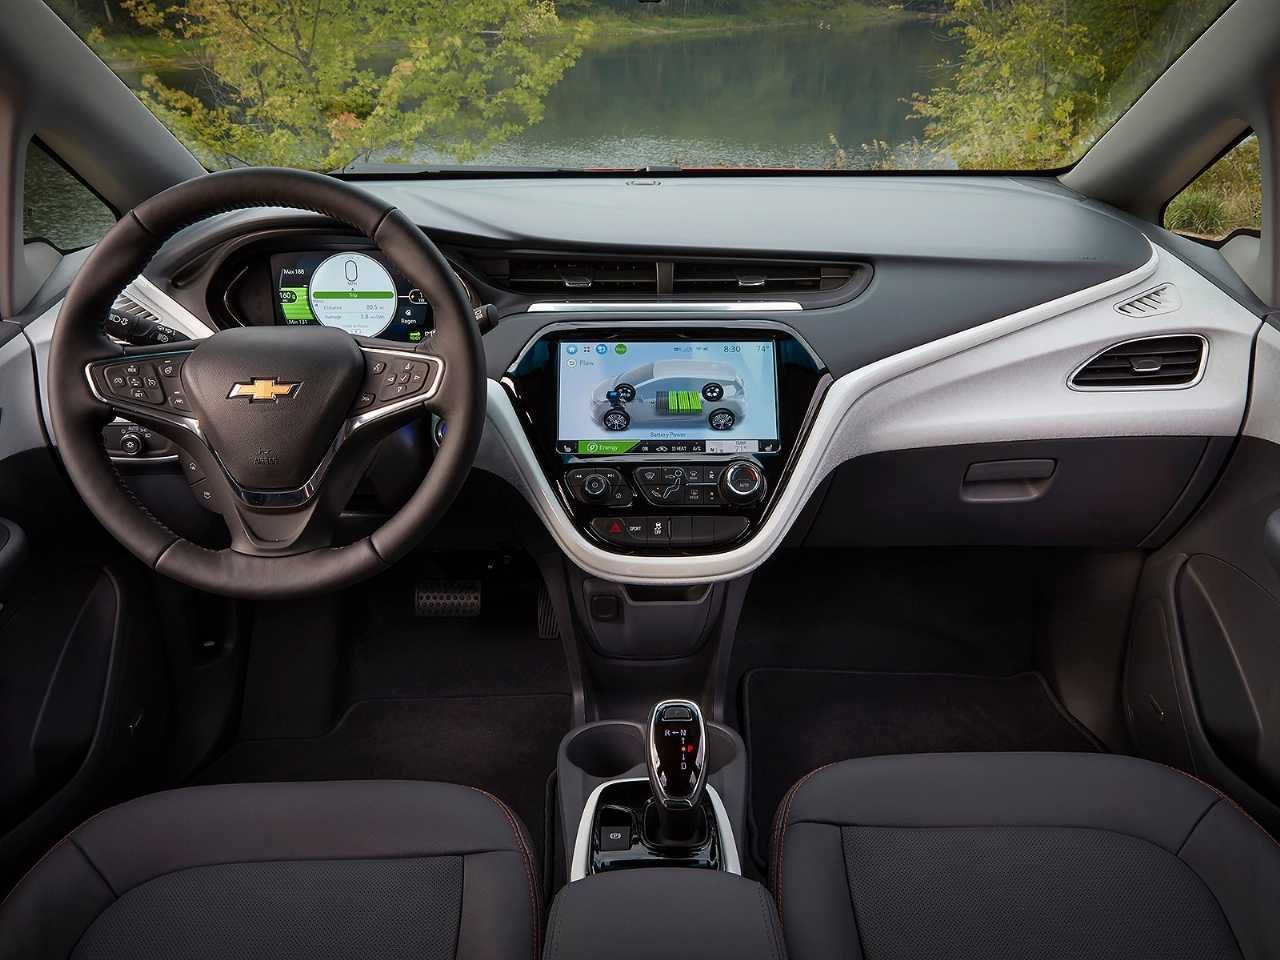 ChevroletBolt EV 2019 - painel